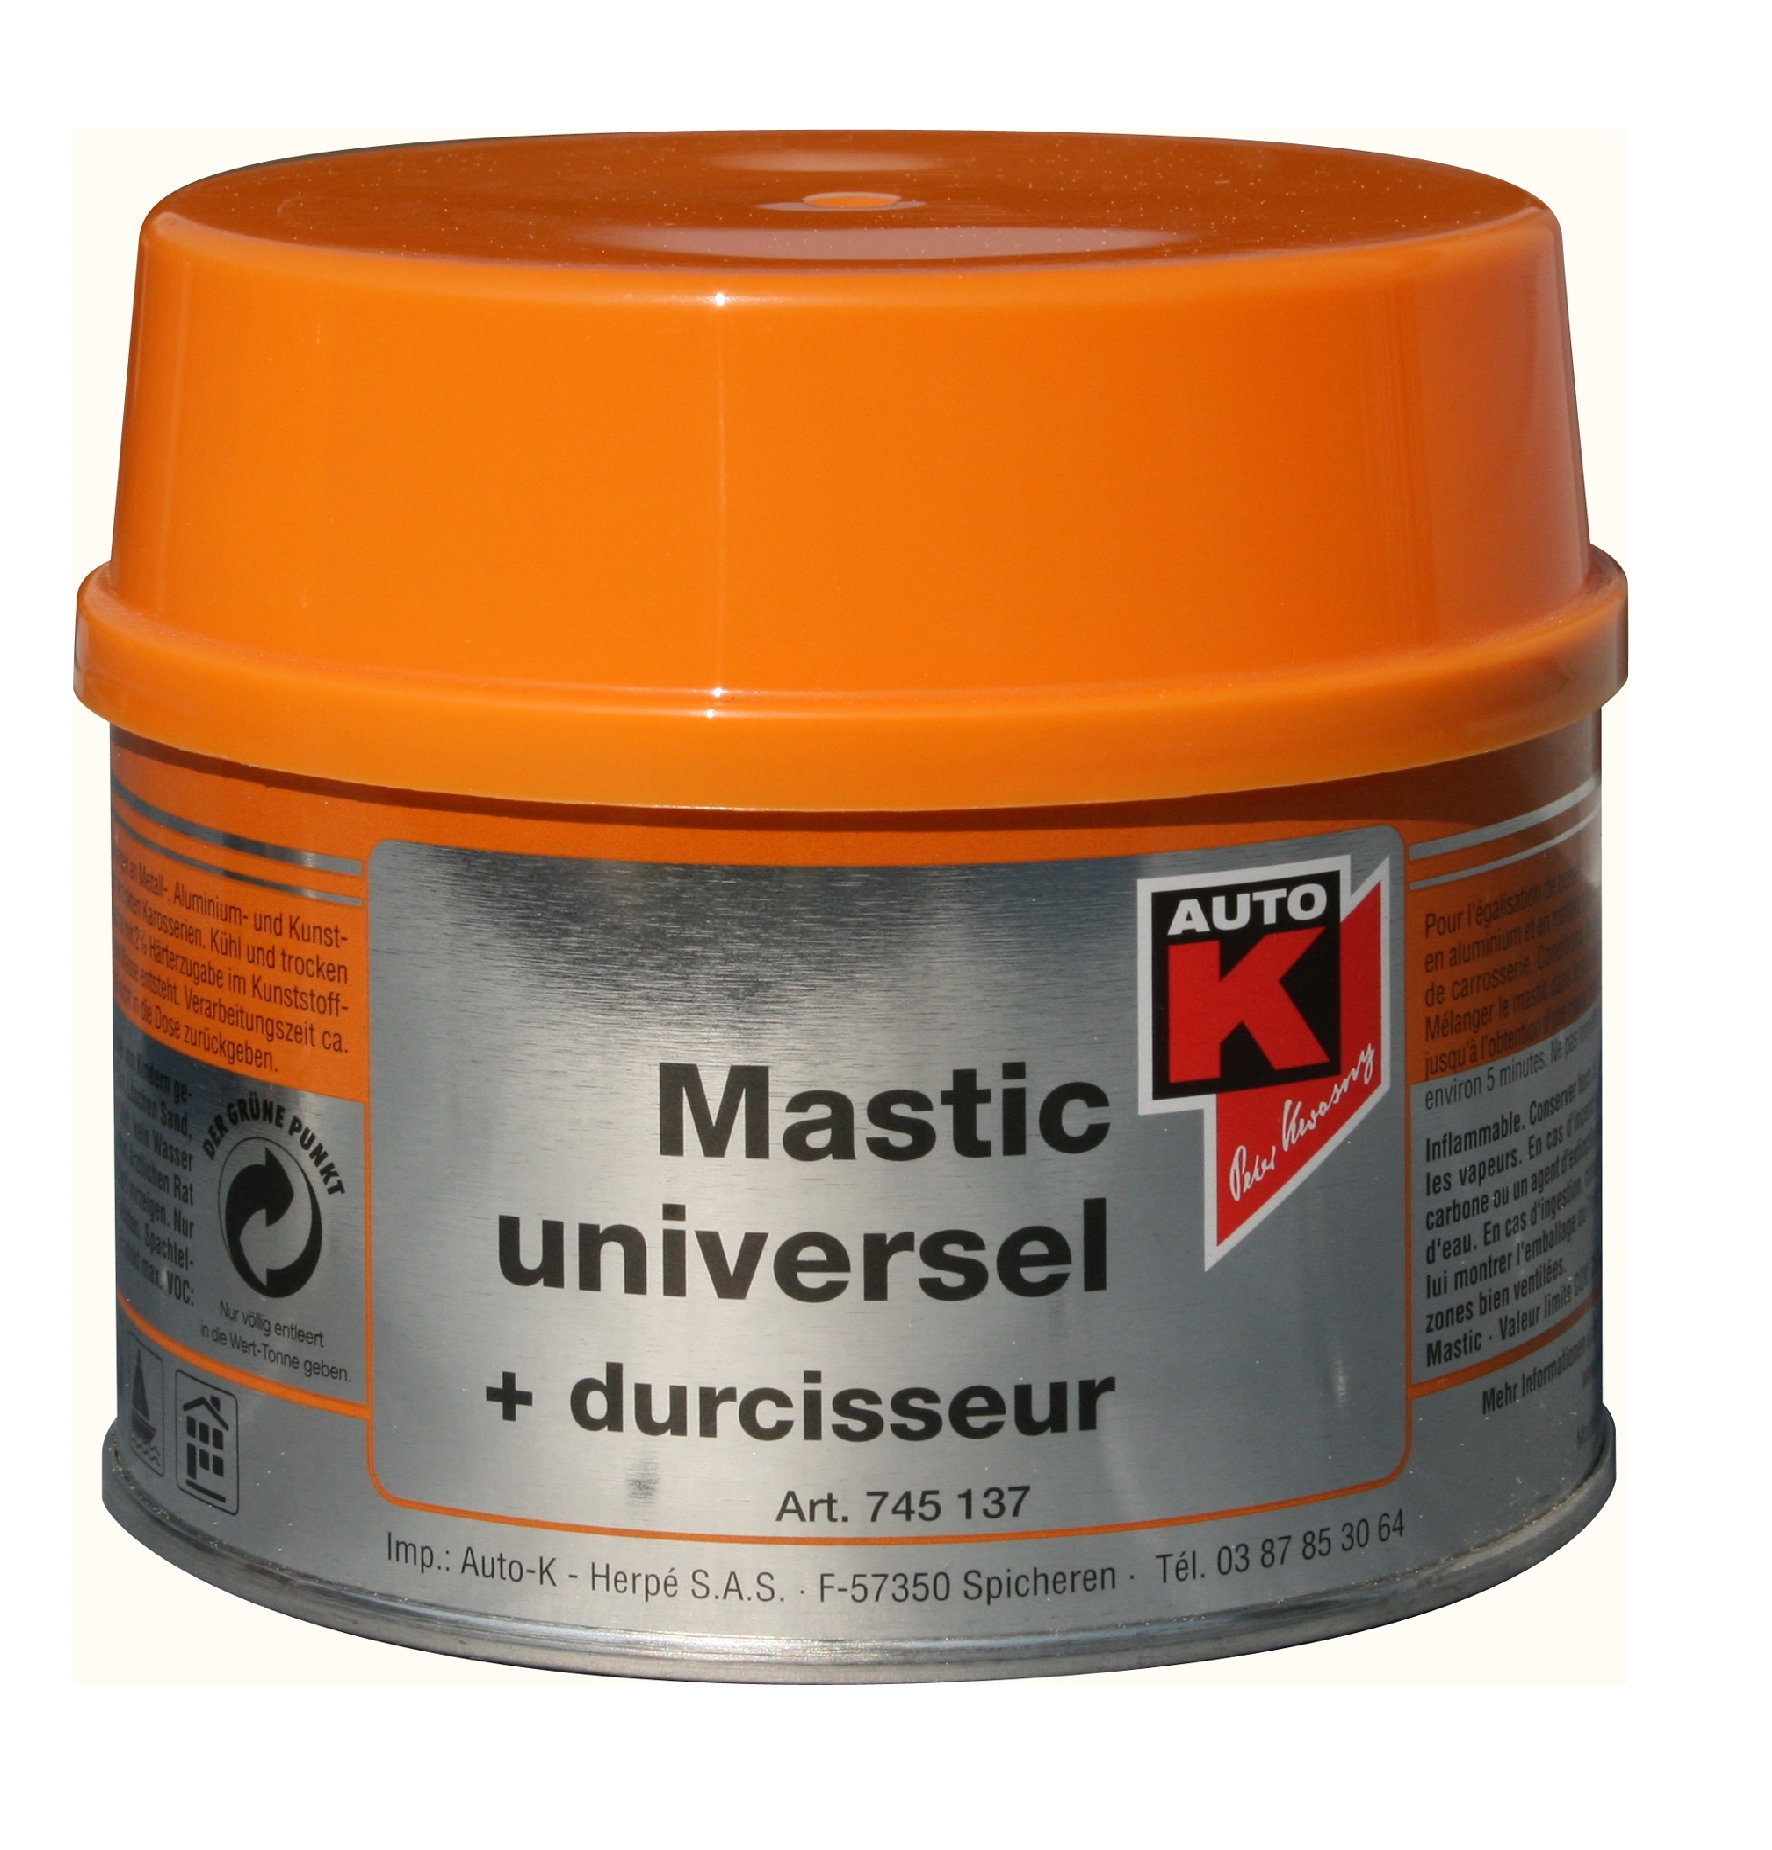 MASTIC UNIVERSEL 500GR + DURCISSEUR- AUTO-K 745137